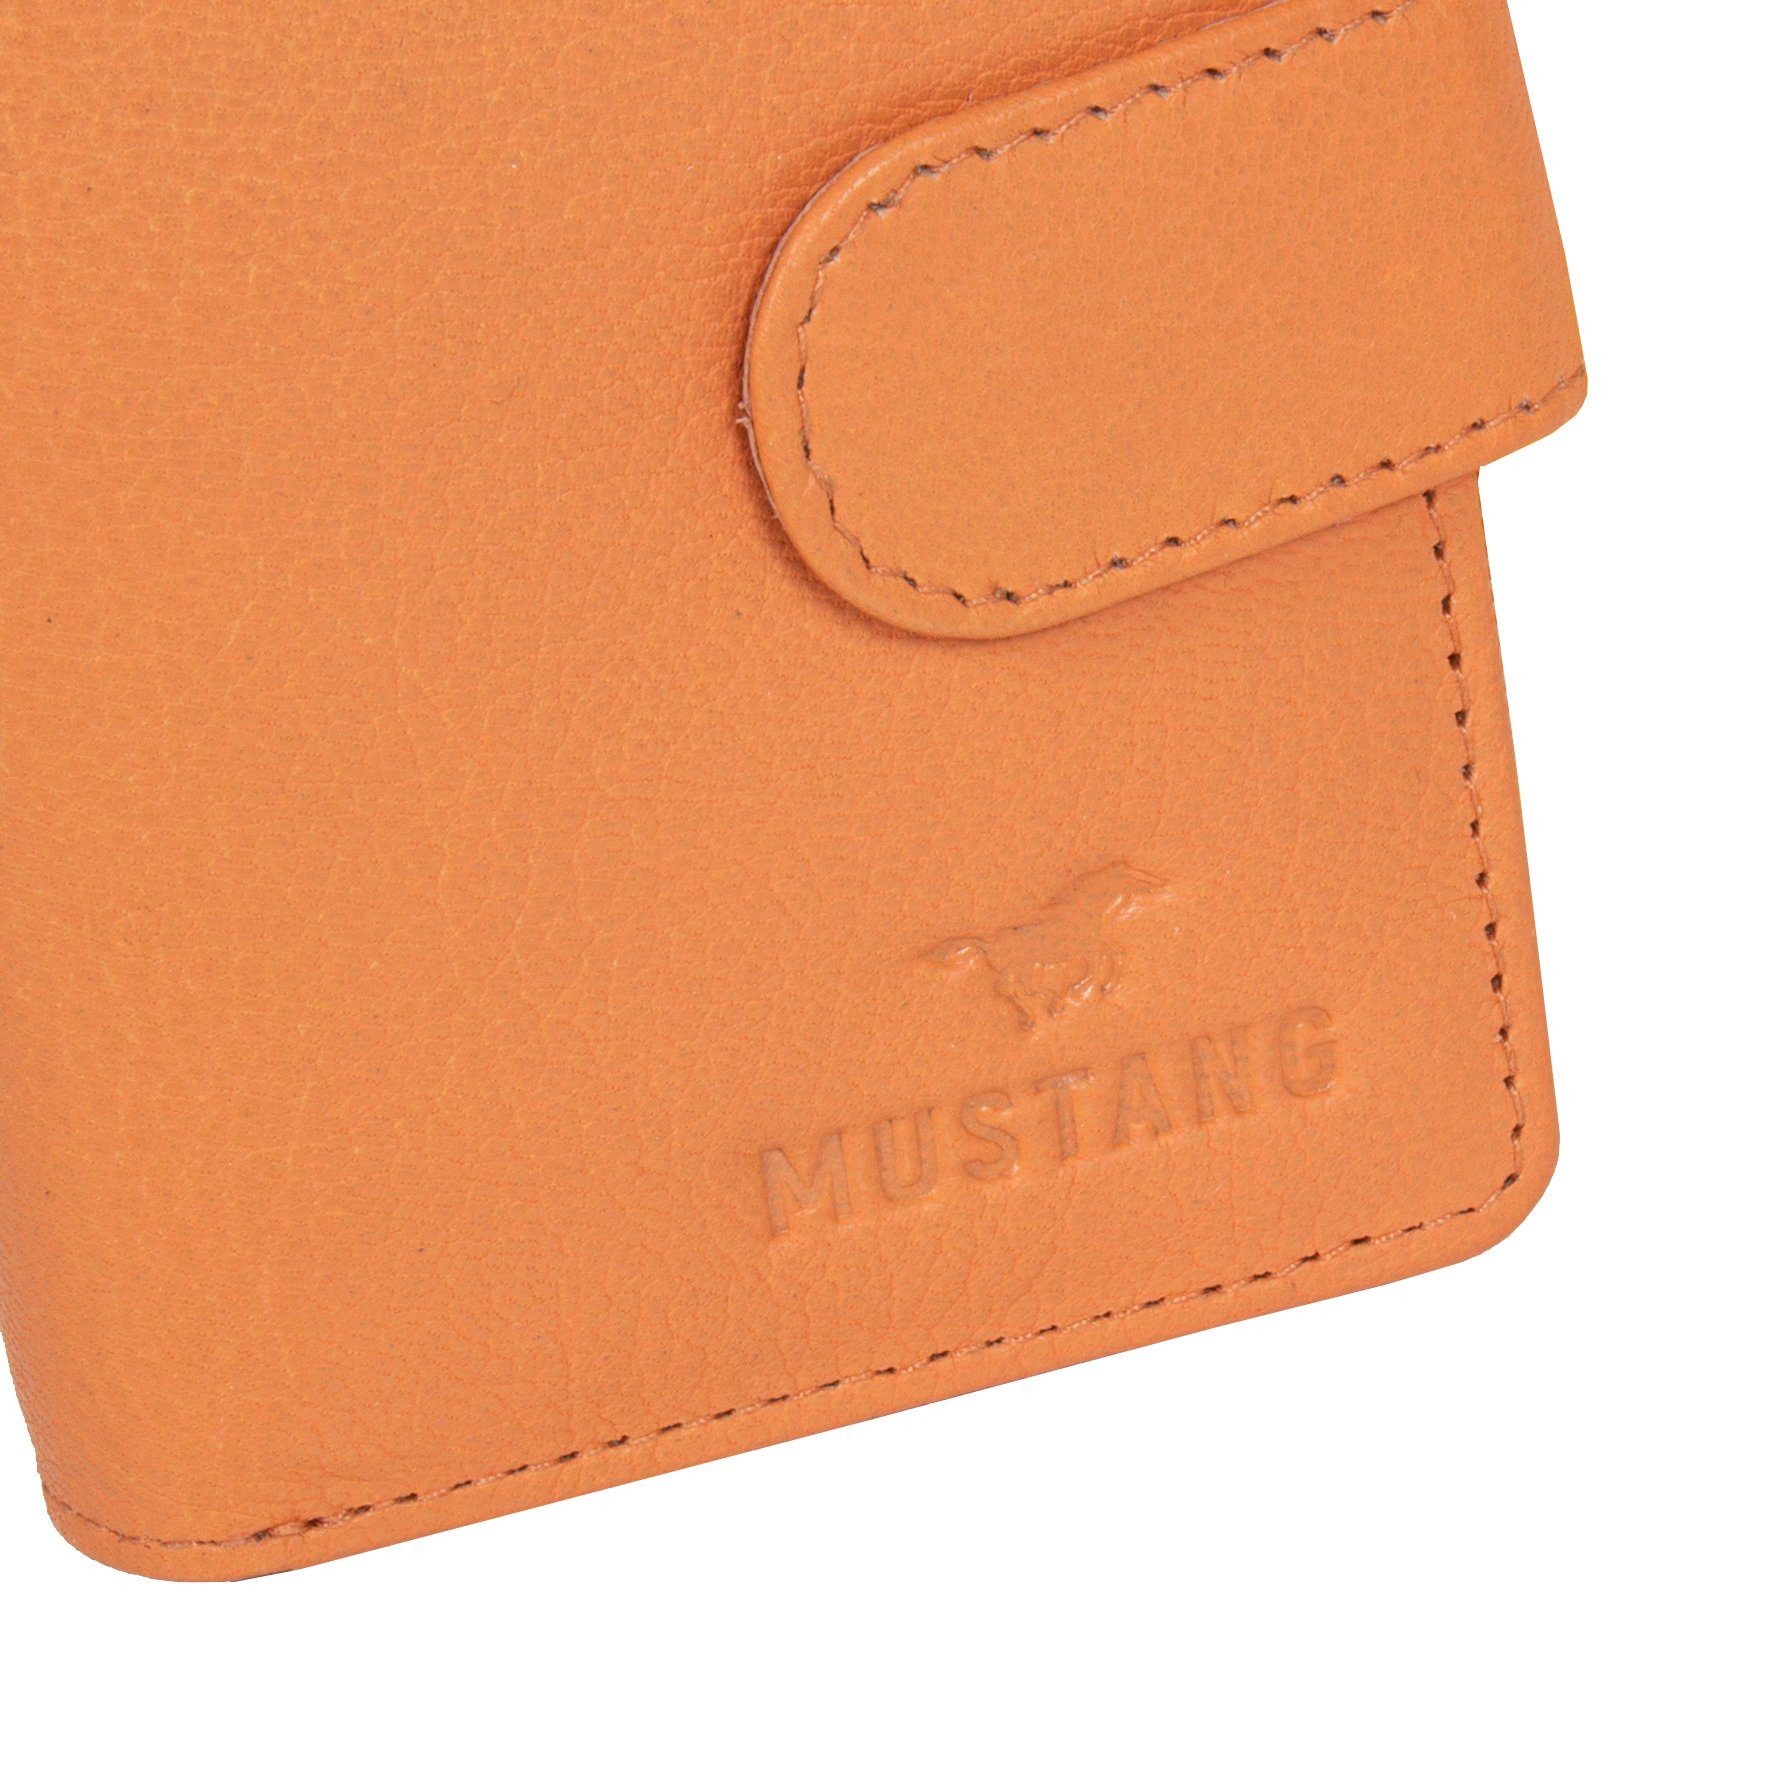 MUSTANG Geldbörse Seattle leather wallet opening, side Orange 6 Kartensteckfächer mit